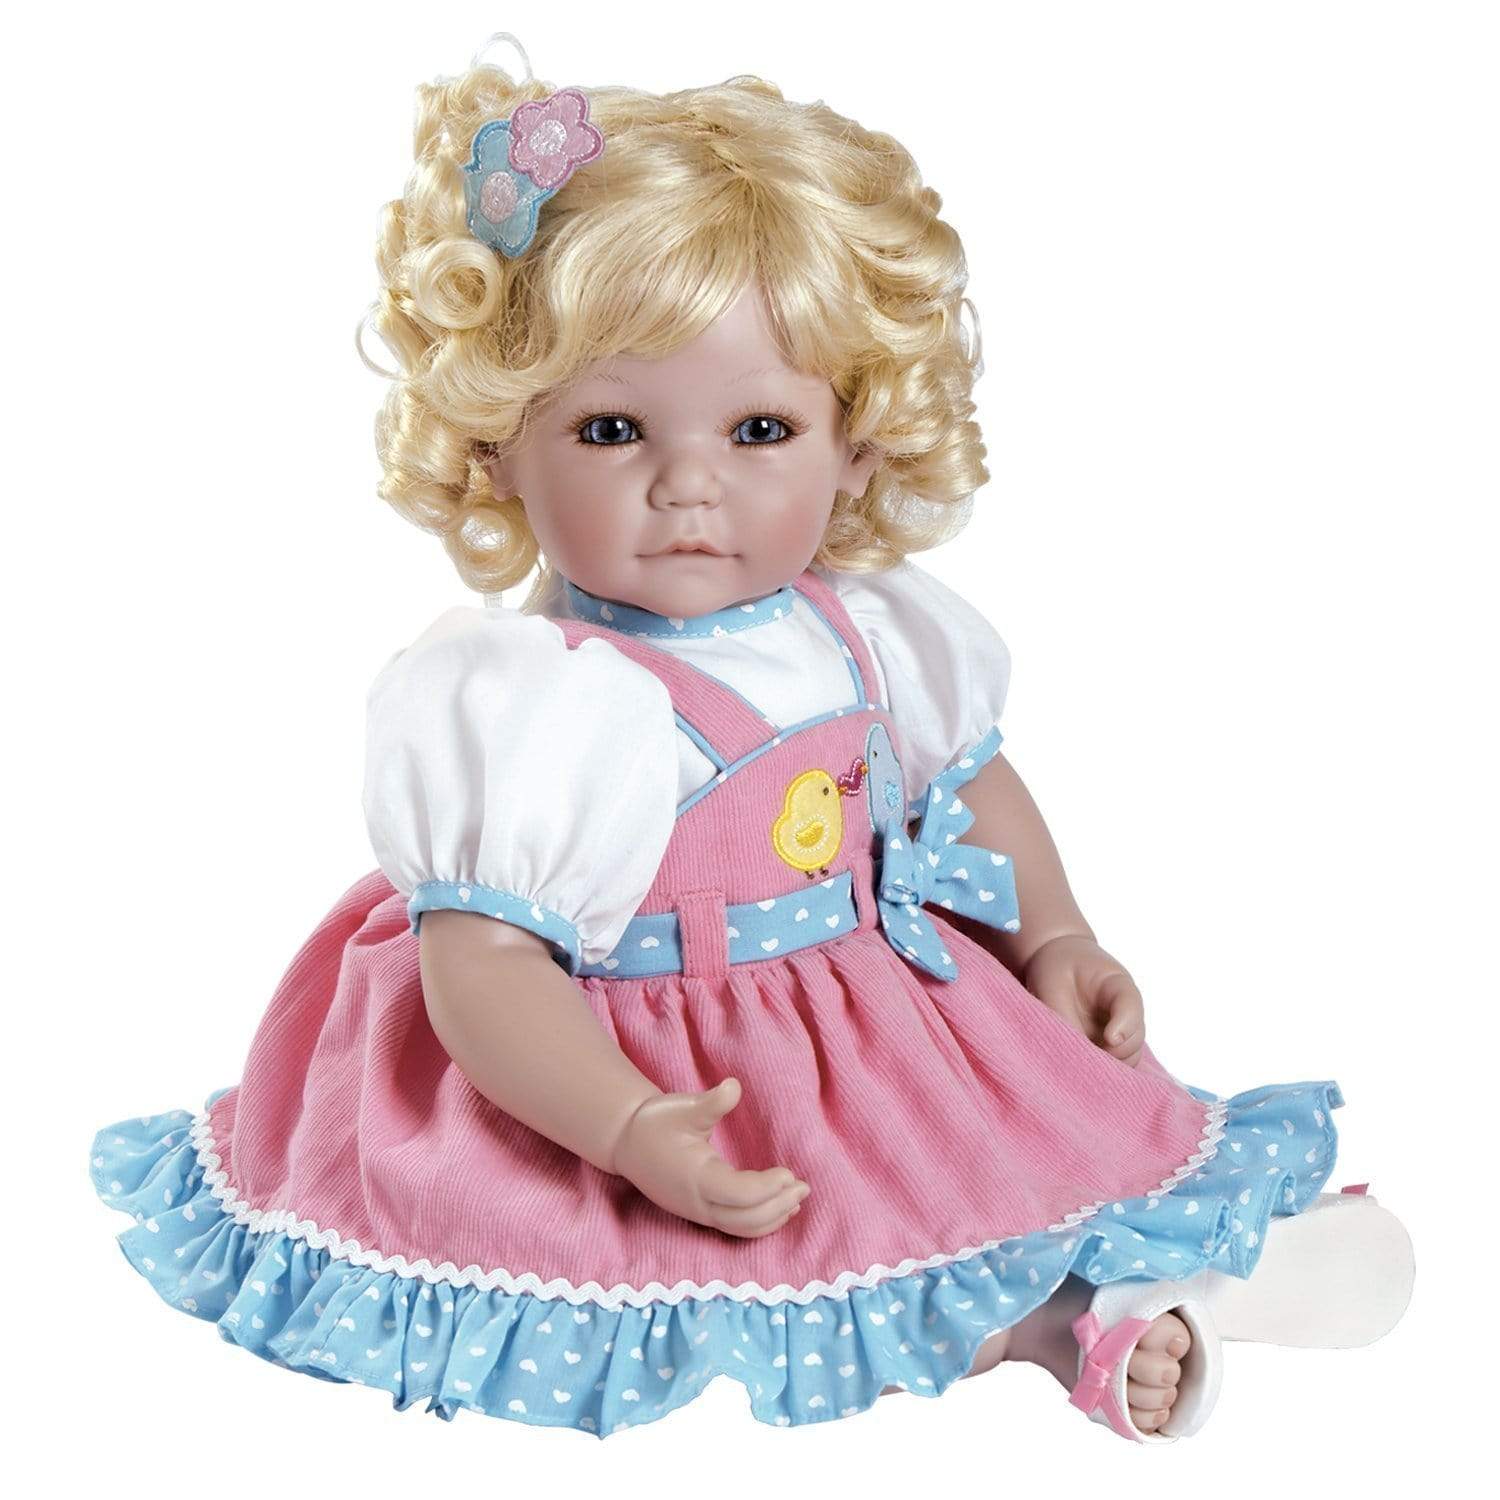 Купить хорошую куклу. Куклы. Красивые куклы. Красивые куклы для девочек. Красивая детская кукла.